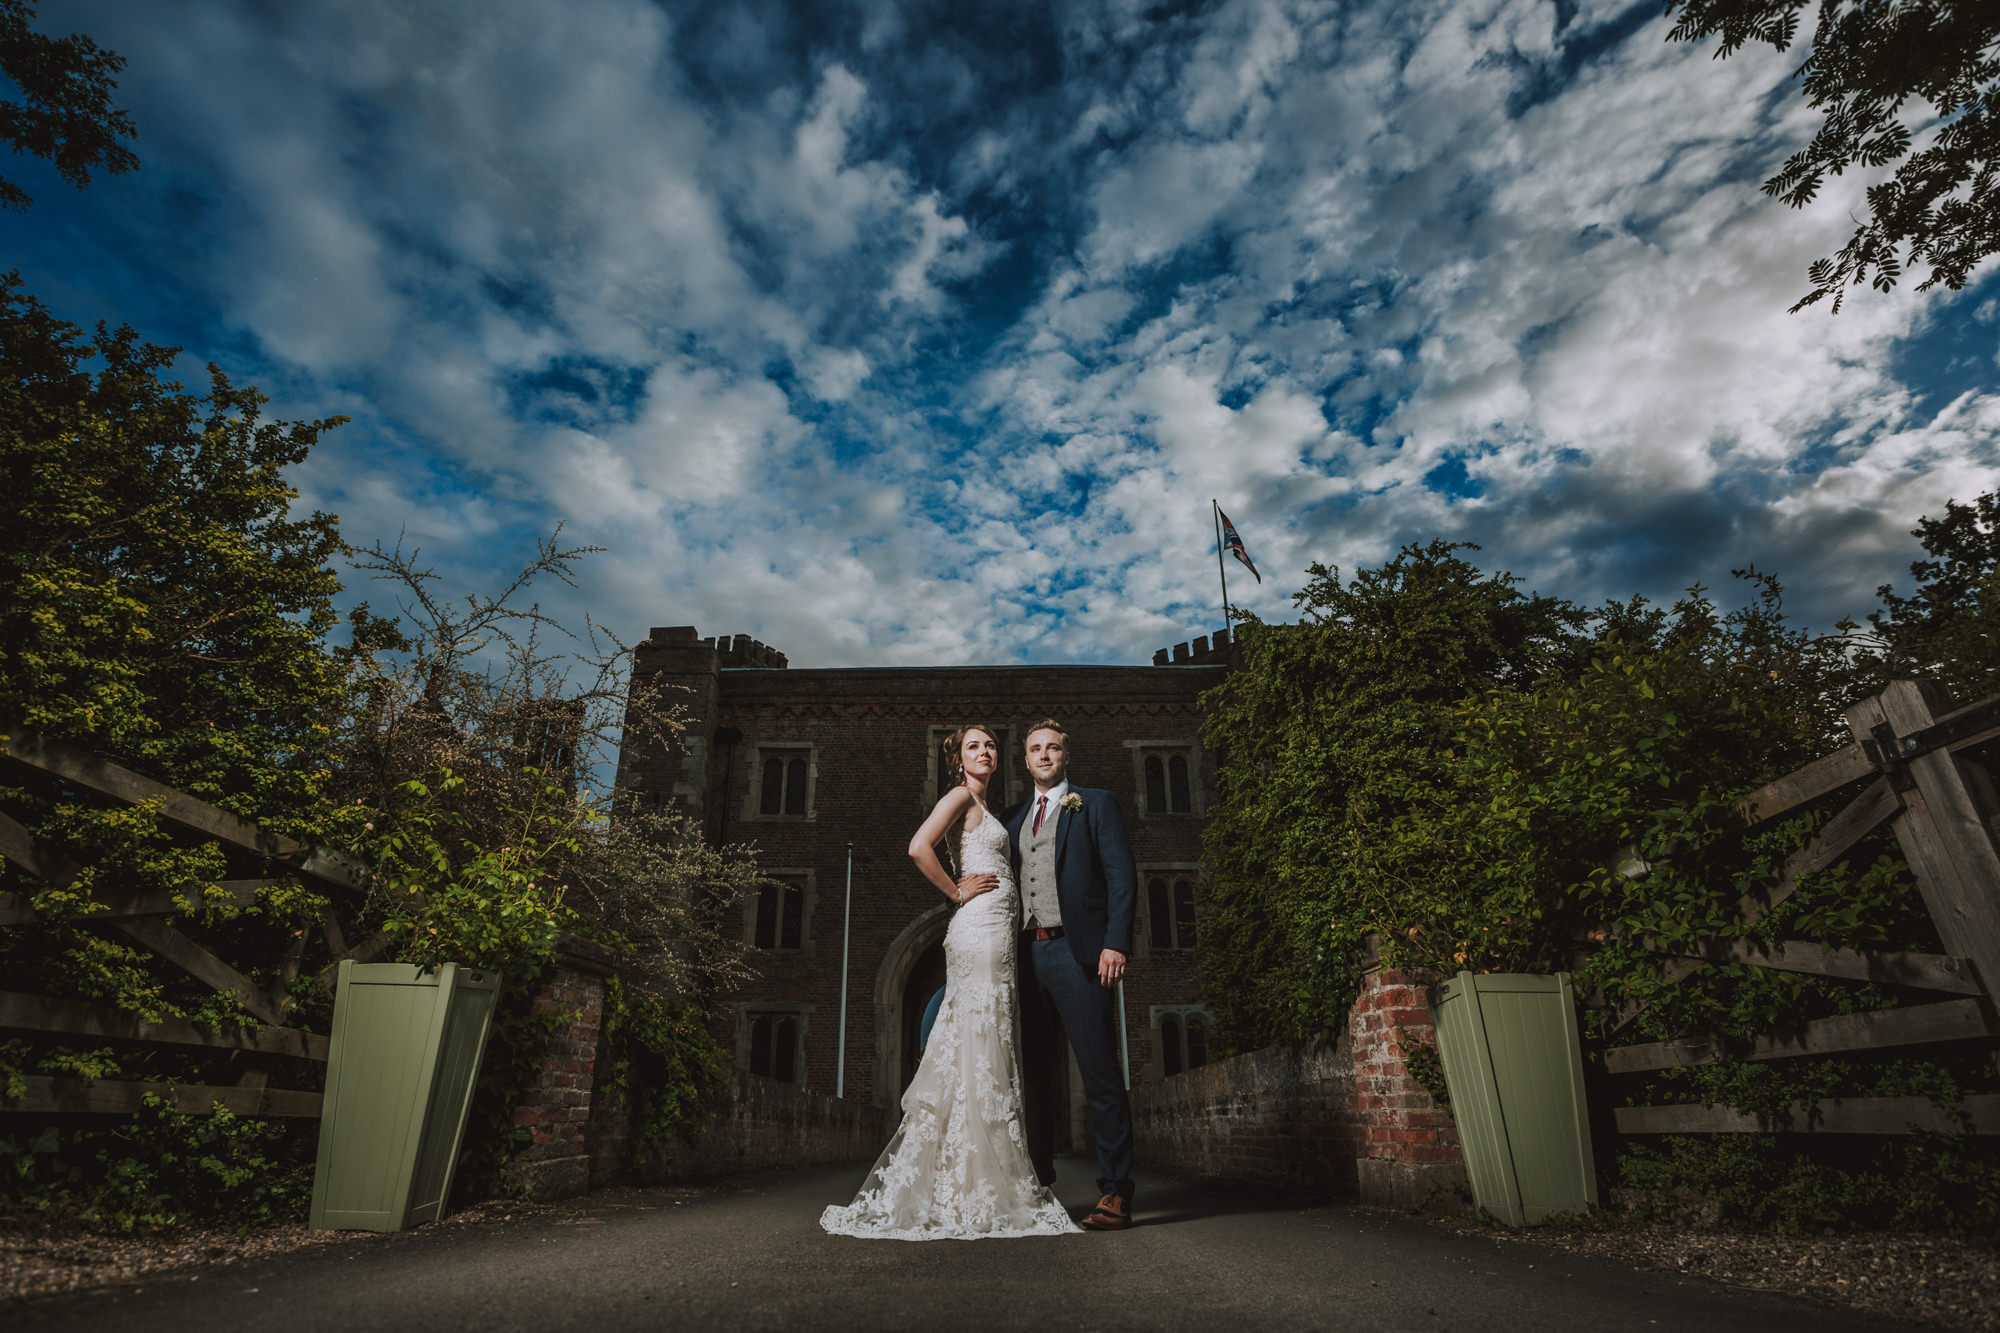 Beautiful wedding photography Hodsock Priory Yorkshire